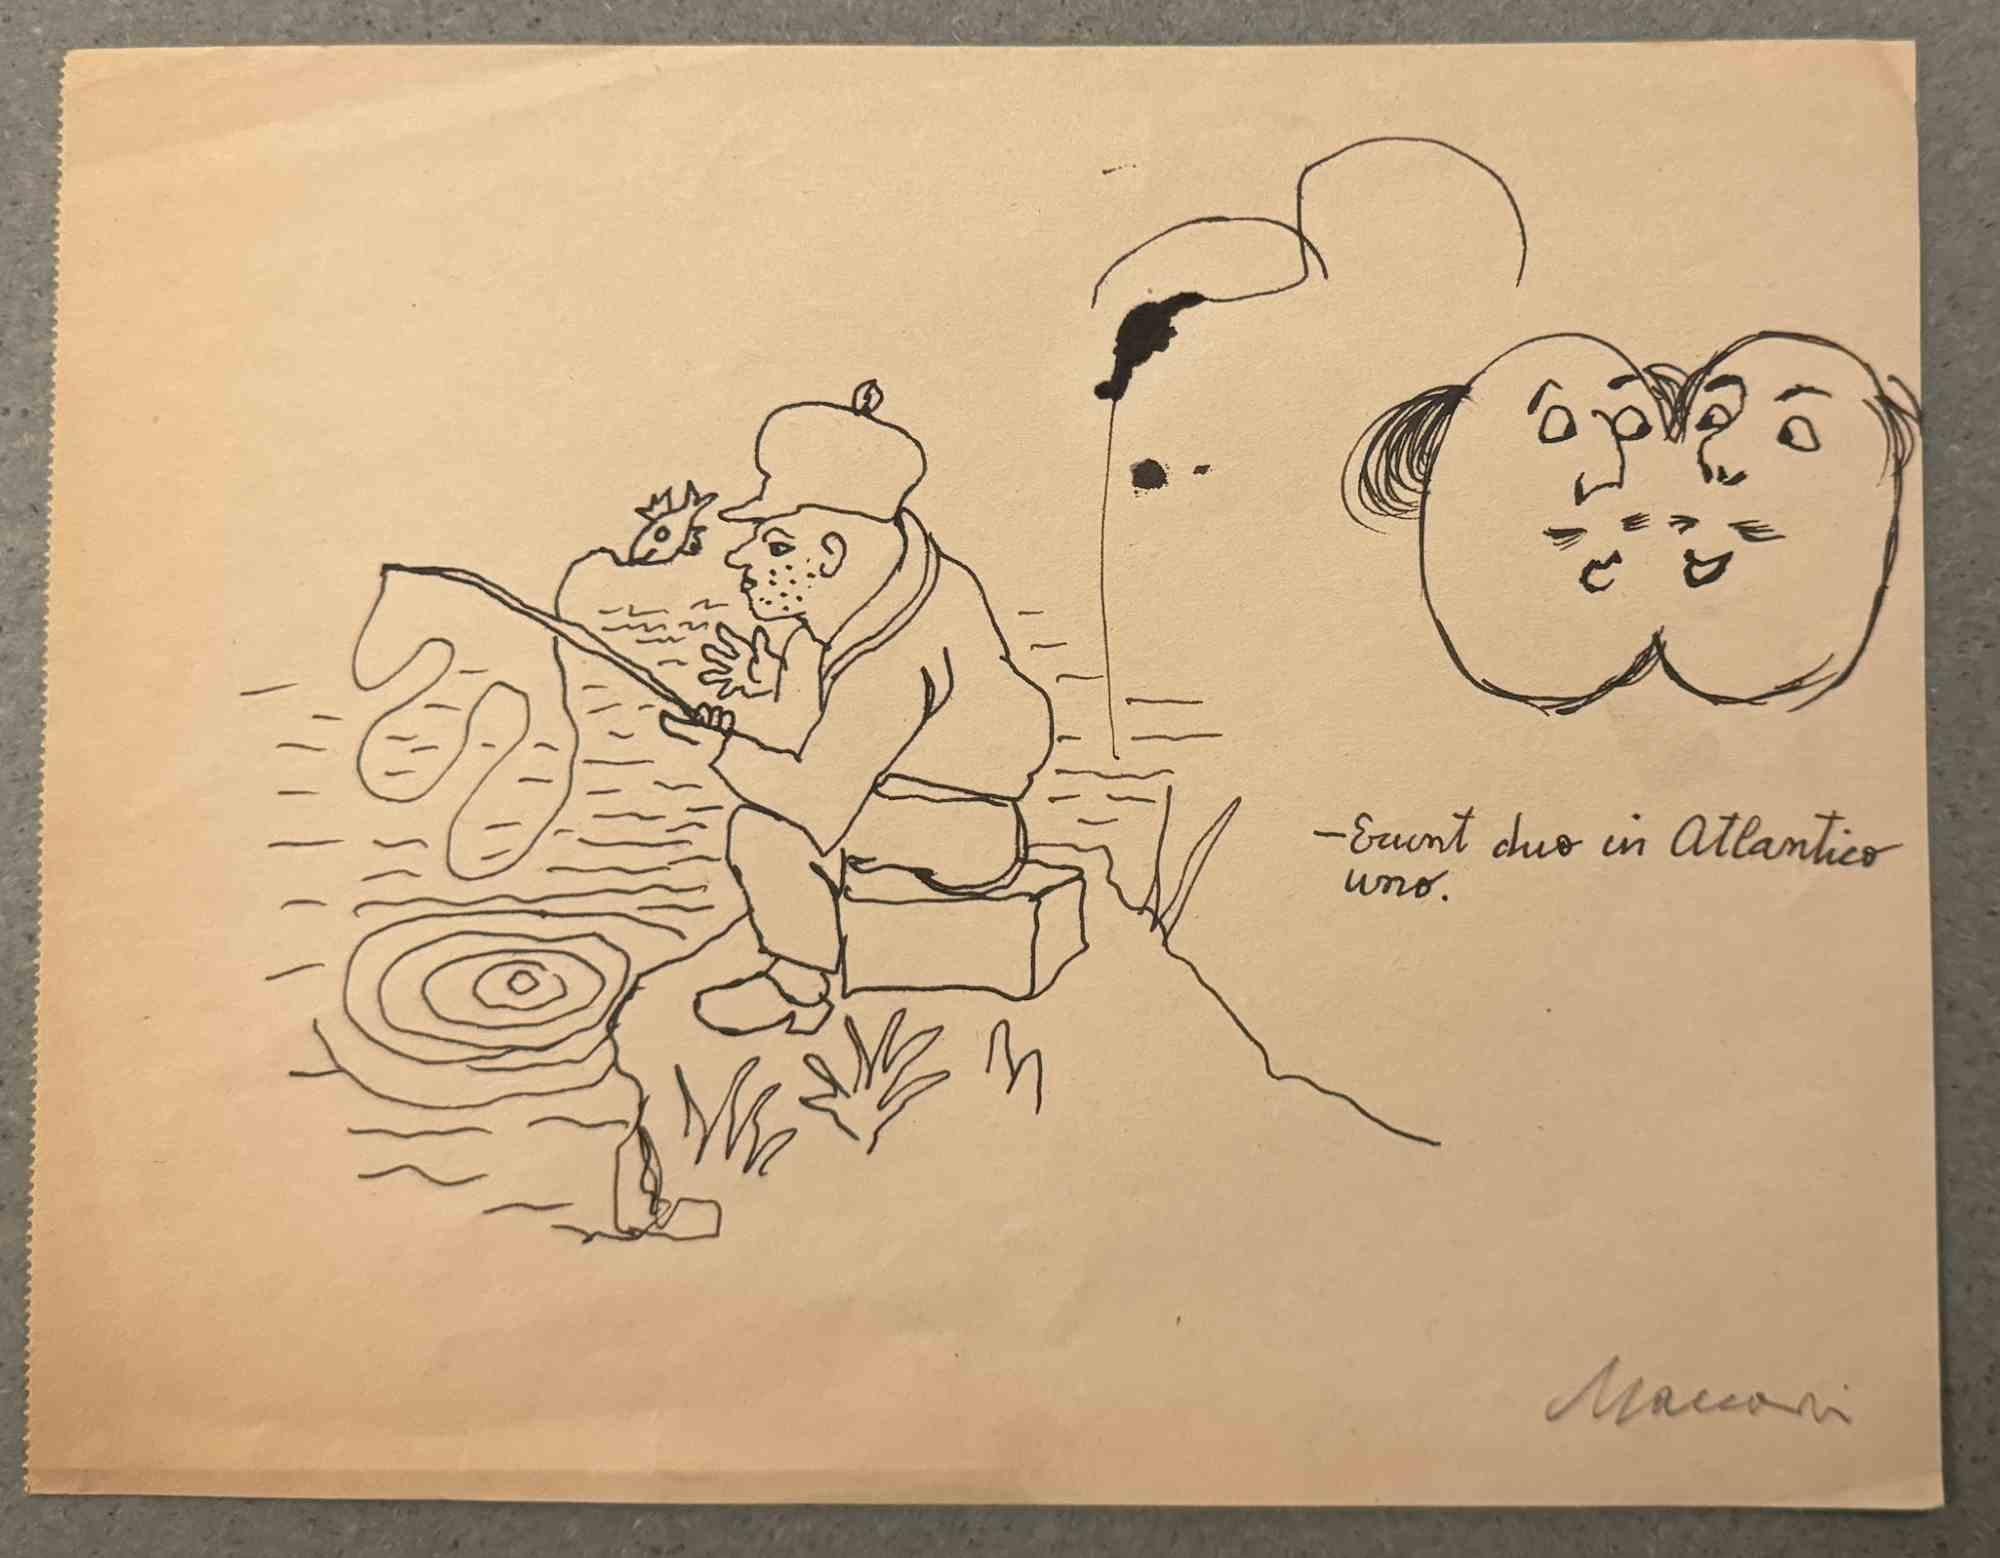 La pêche est un dessin à l'encre de Chine réalisé par Mino Maccari (1924-1989) au milieu du 20e siècle.

Signé à la main.

Bon état avec de légères rousseurs.

Mino Maccari (Sienne, 1924-Rome, 16 juin 1989) est un écrivain, peintre, graveur et